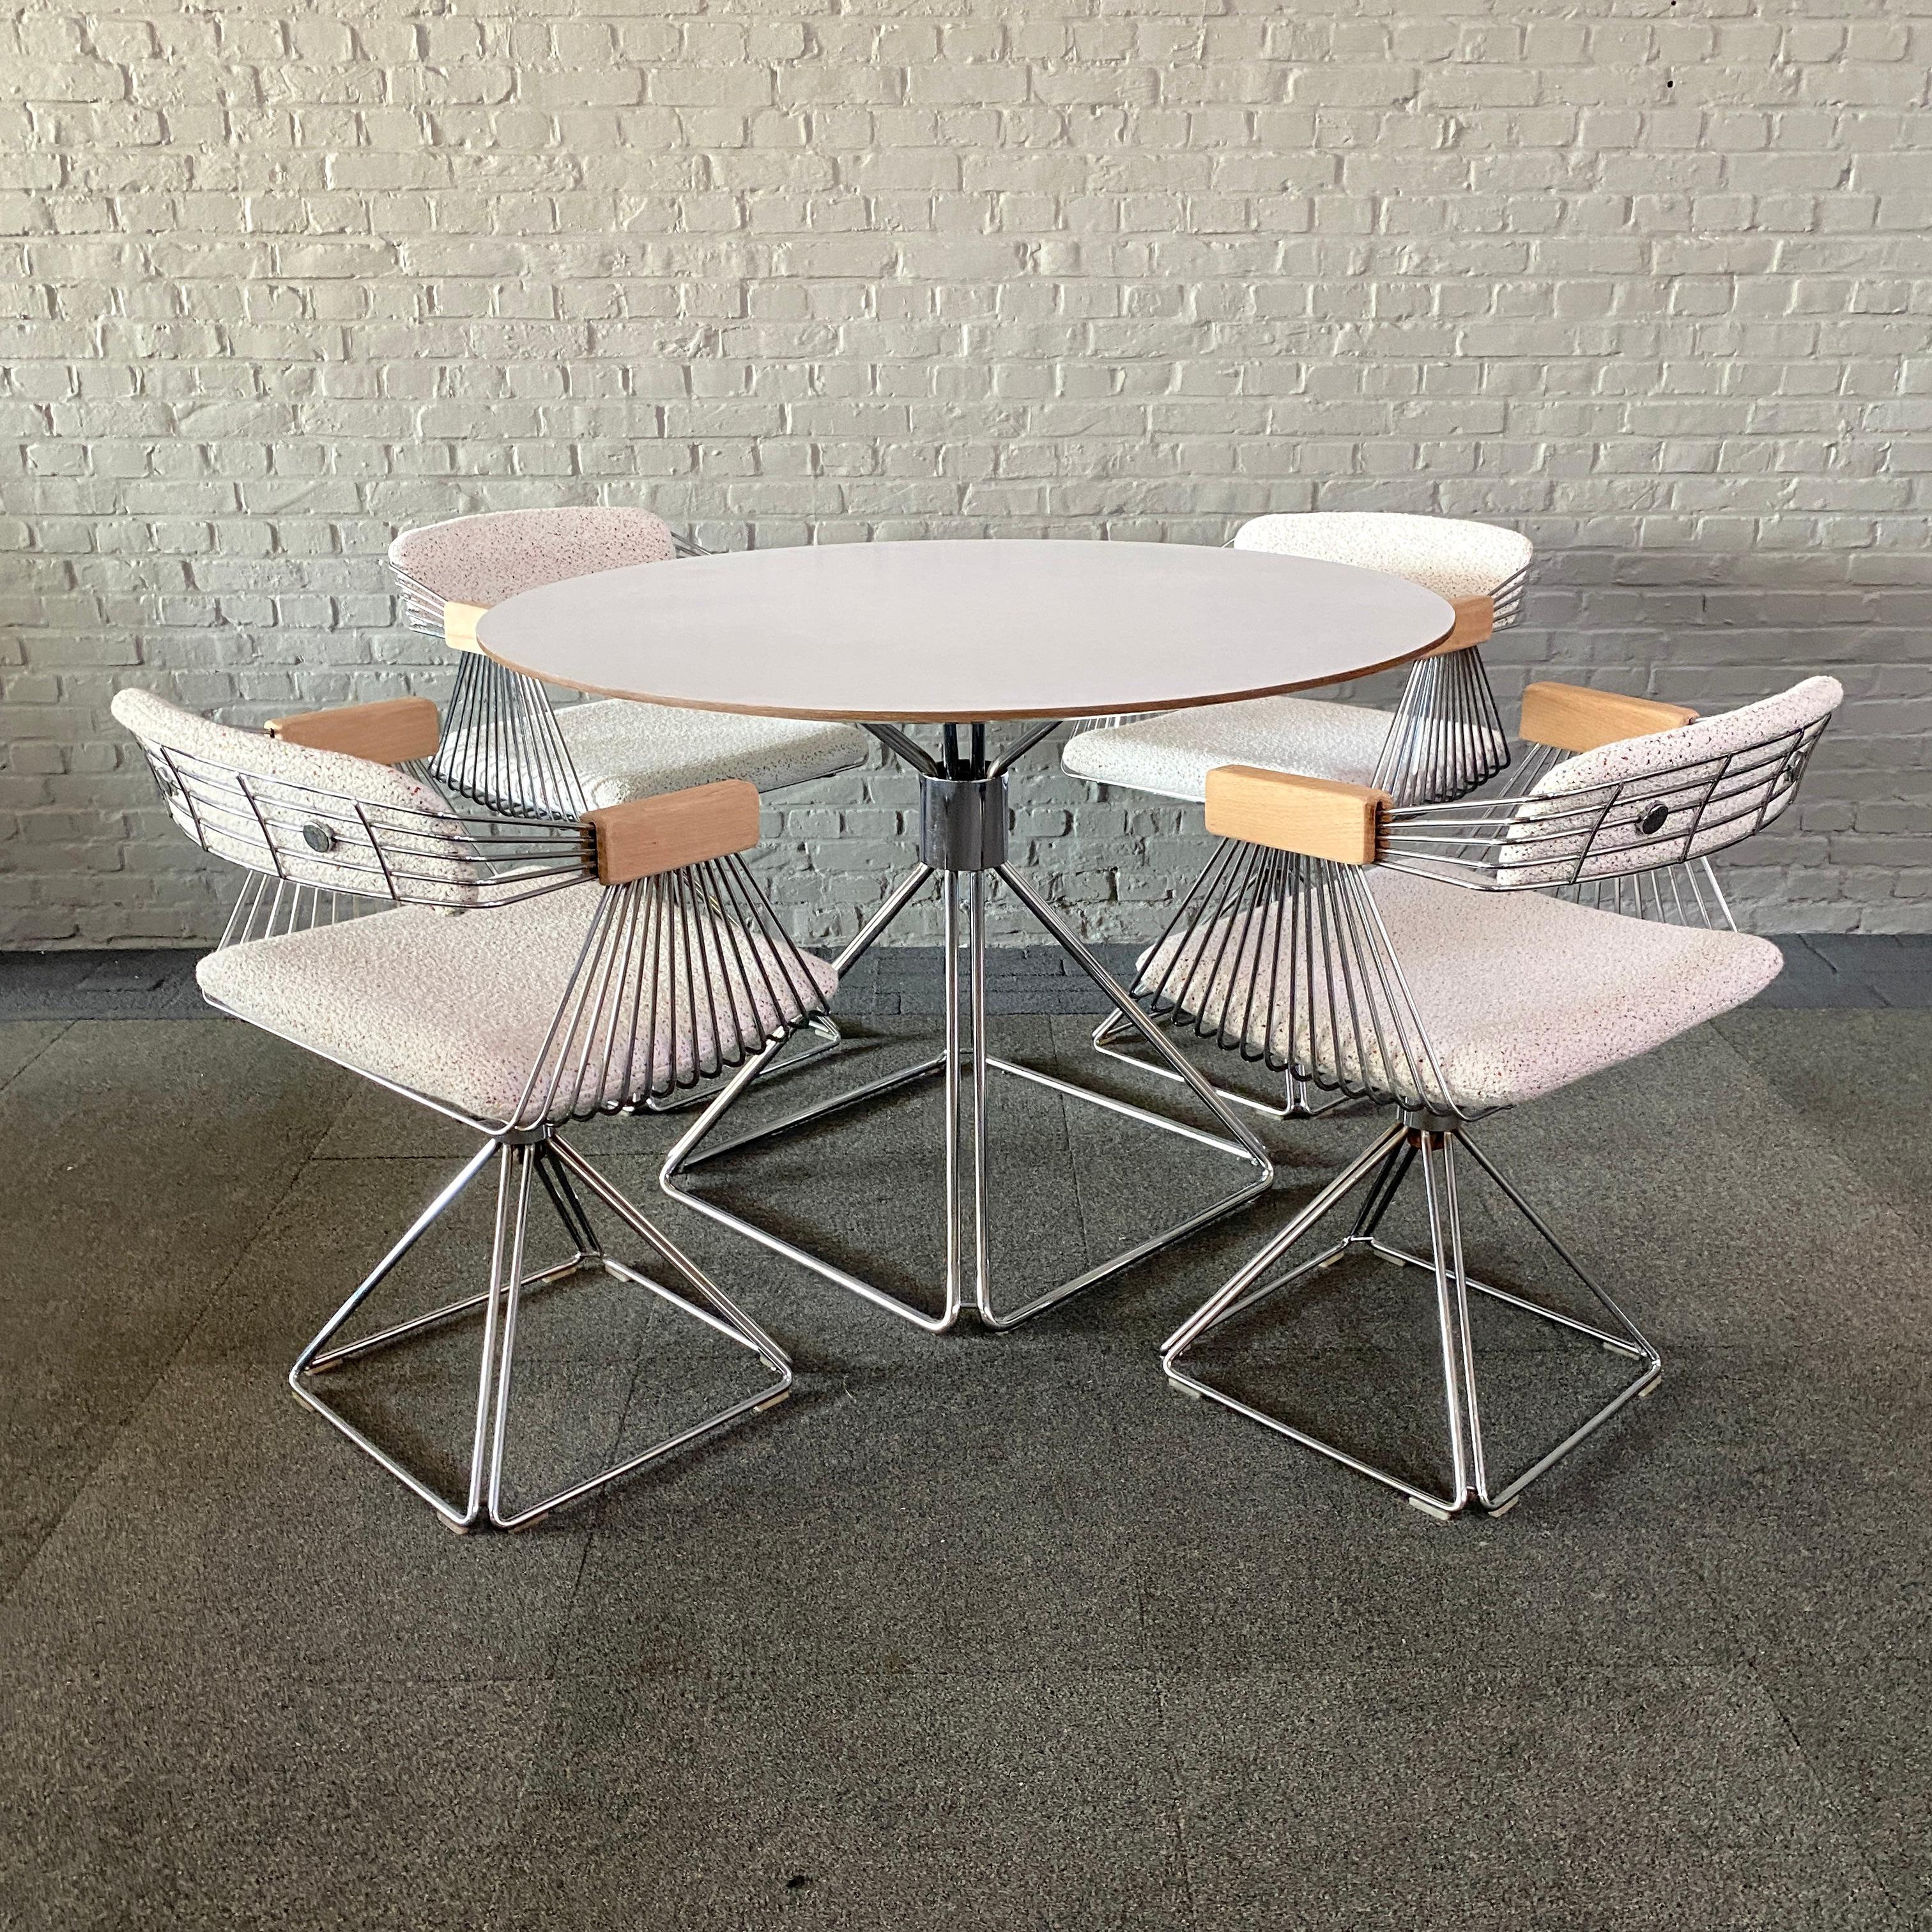 Erstaunliches & elegantes Esszimmer-Set.
Entworfen von dem belgischen Industriedesigner Rudi Verelst für Novalux.
Das Set besteht aus einem runden Esstisch und 4 drehbaren Sesseln.

Diese auffälligen Delta